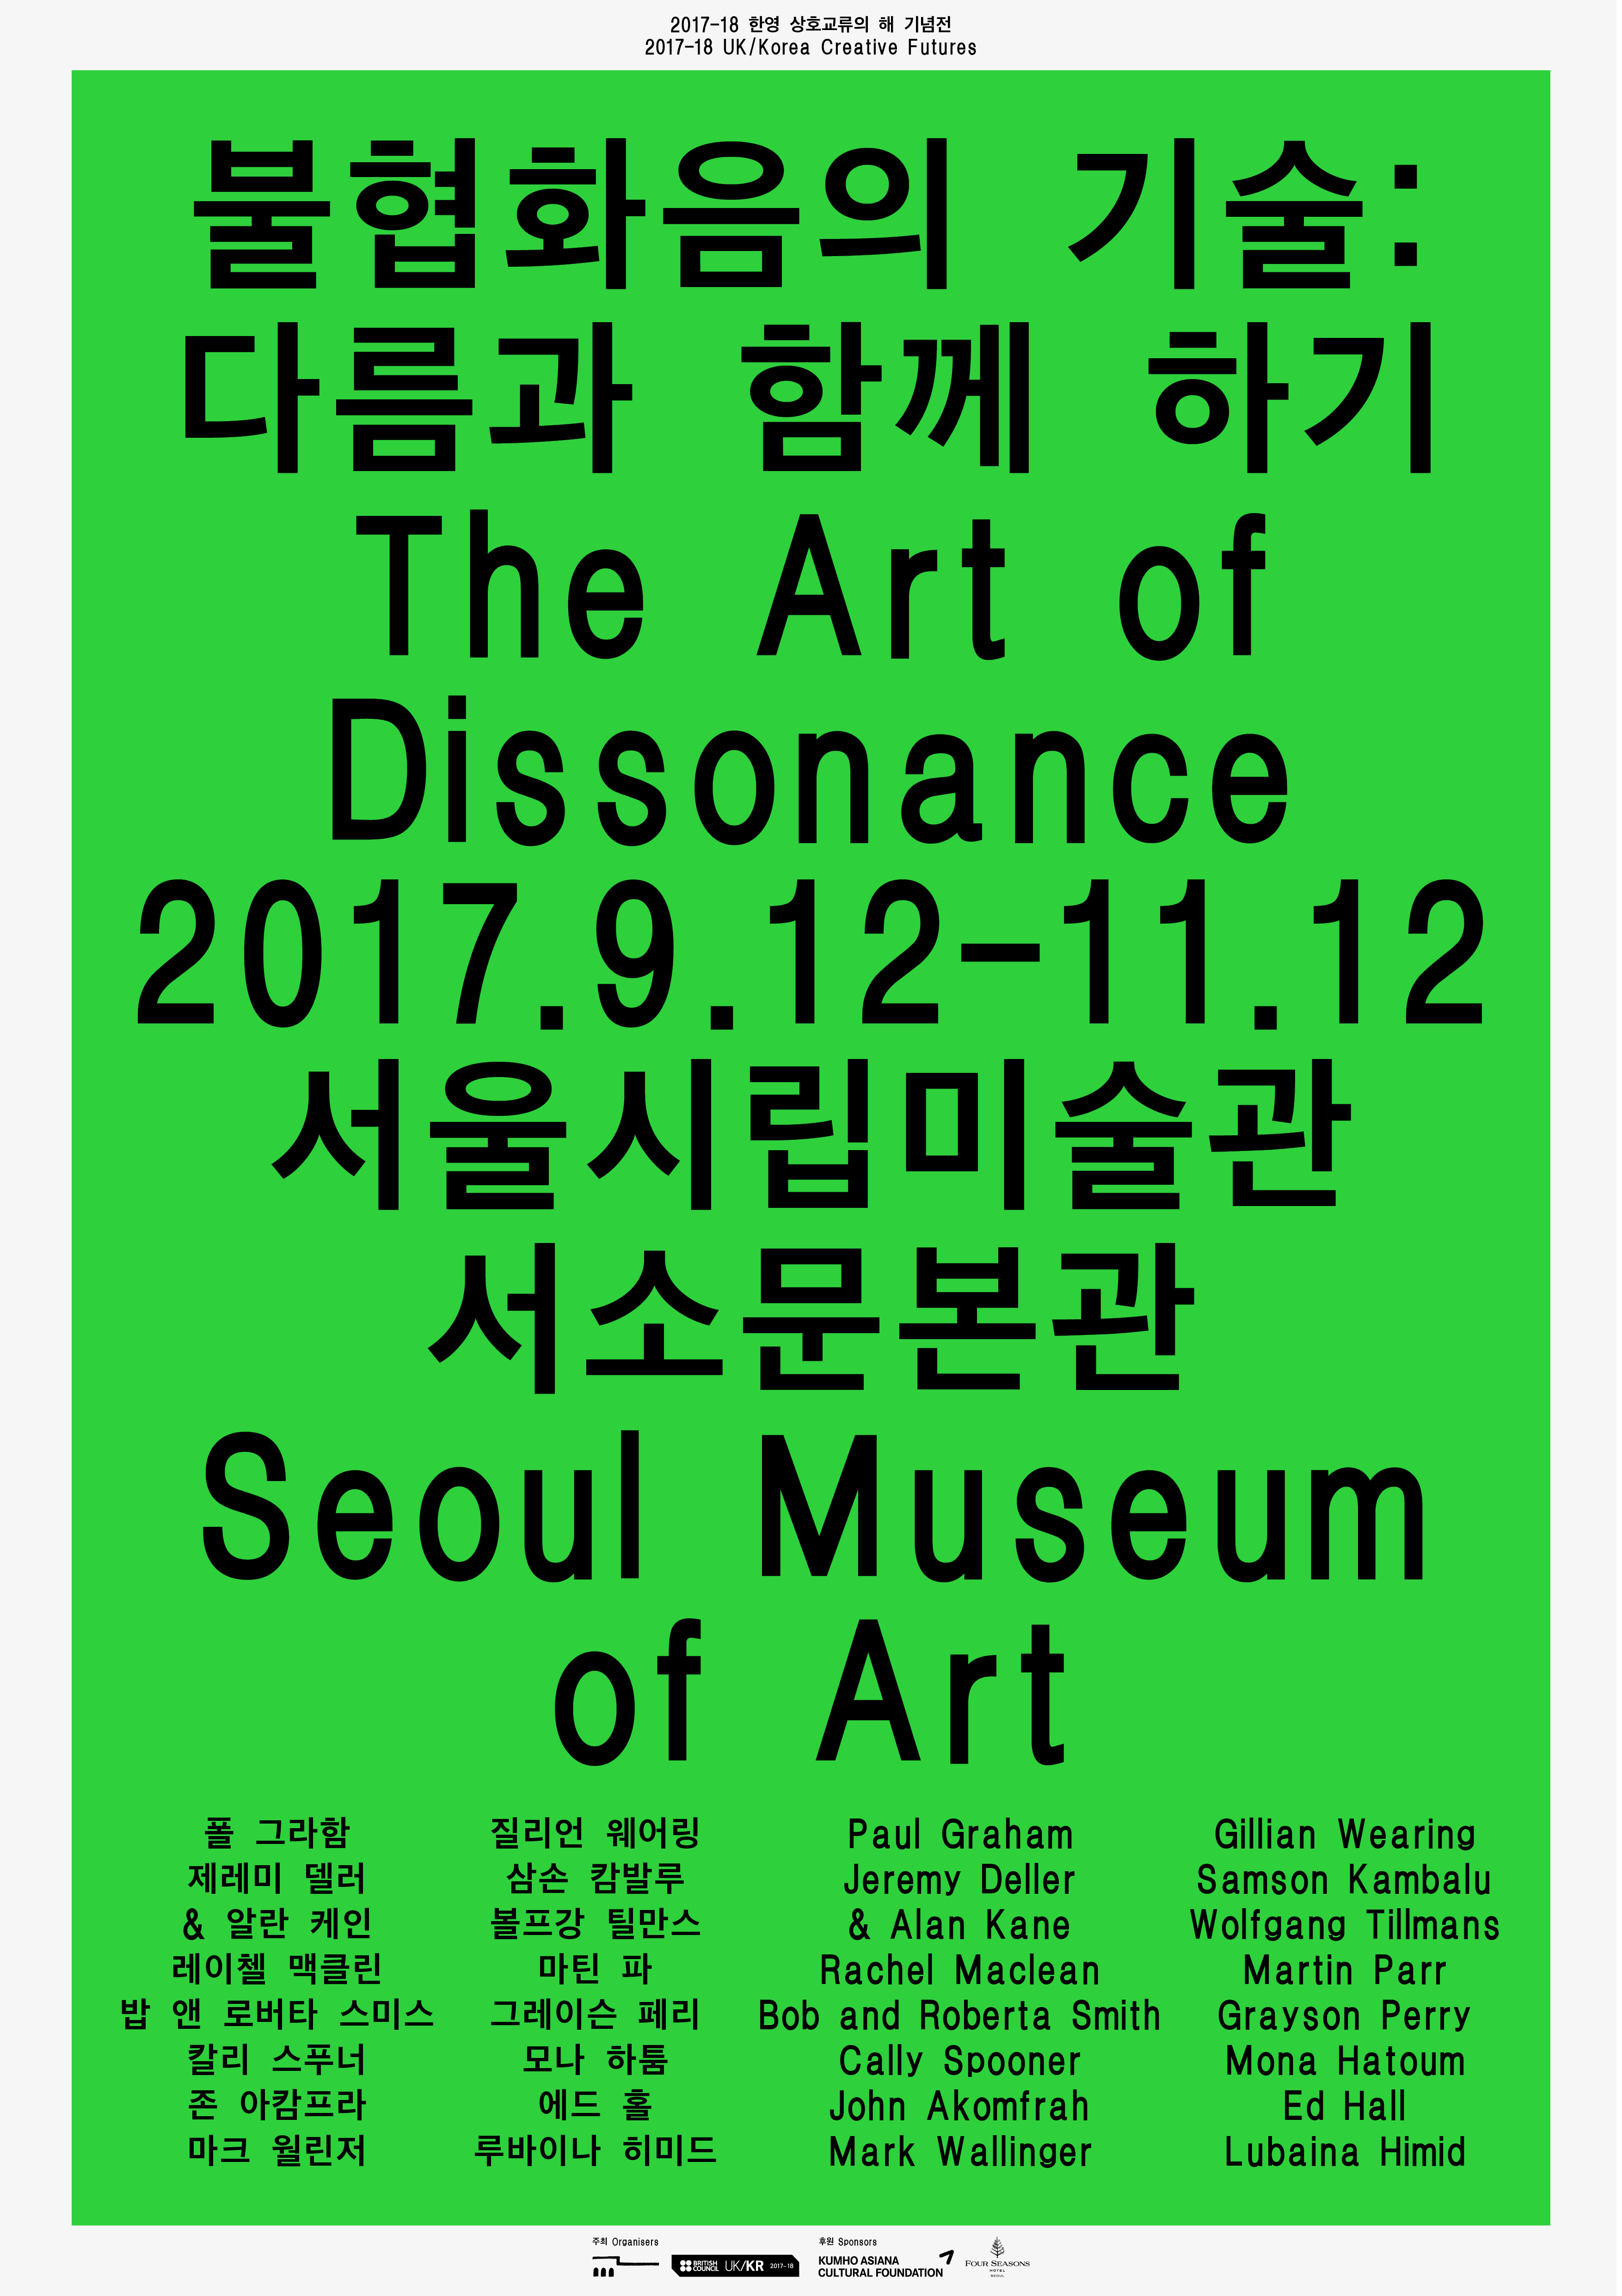 ソウル市立美術館